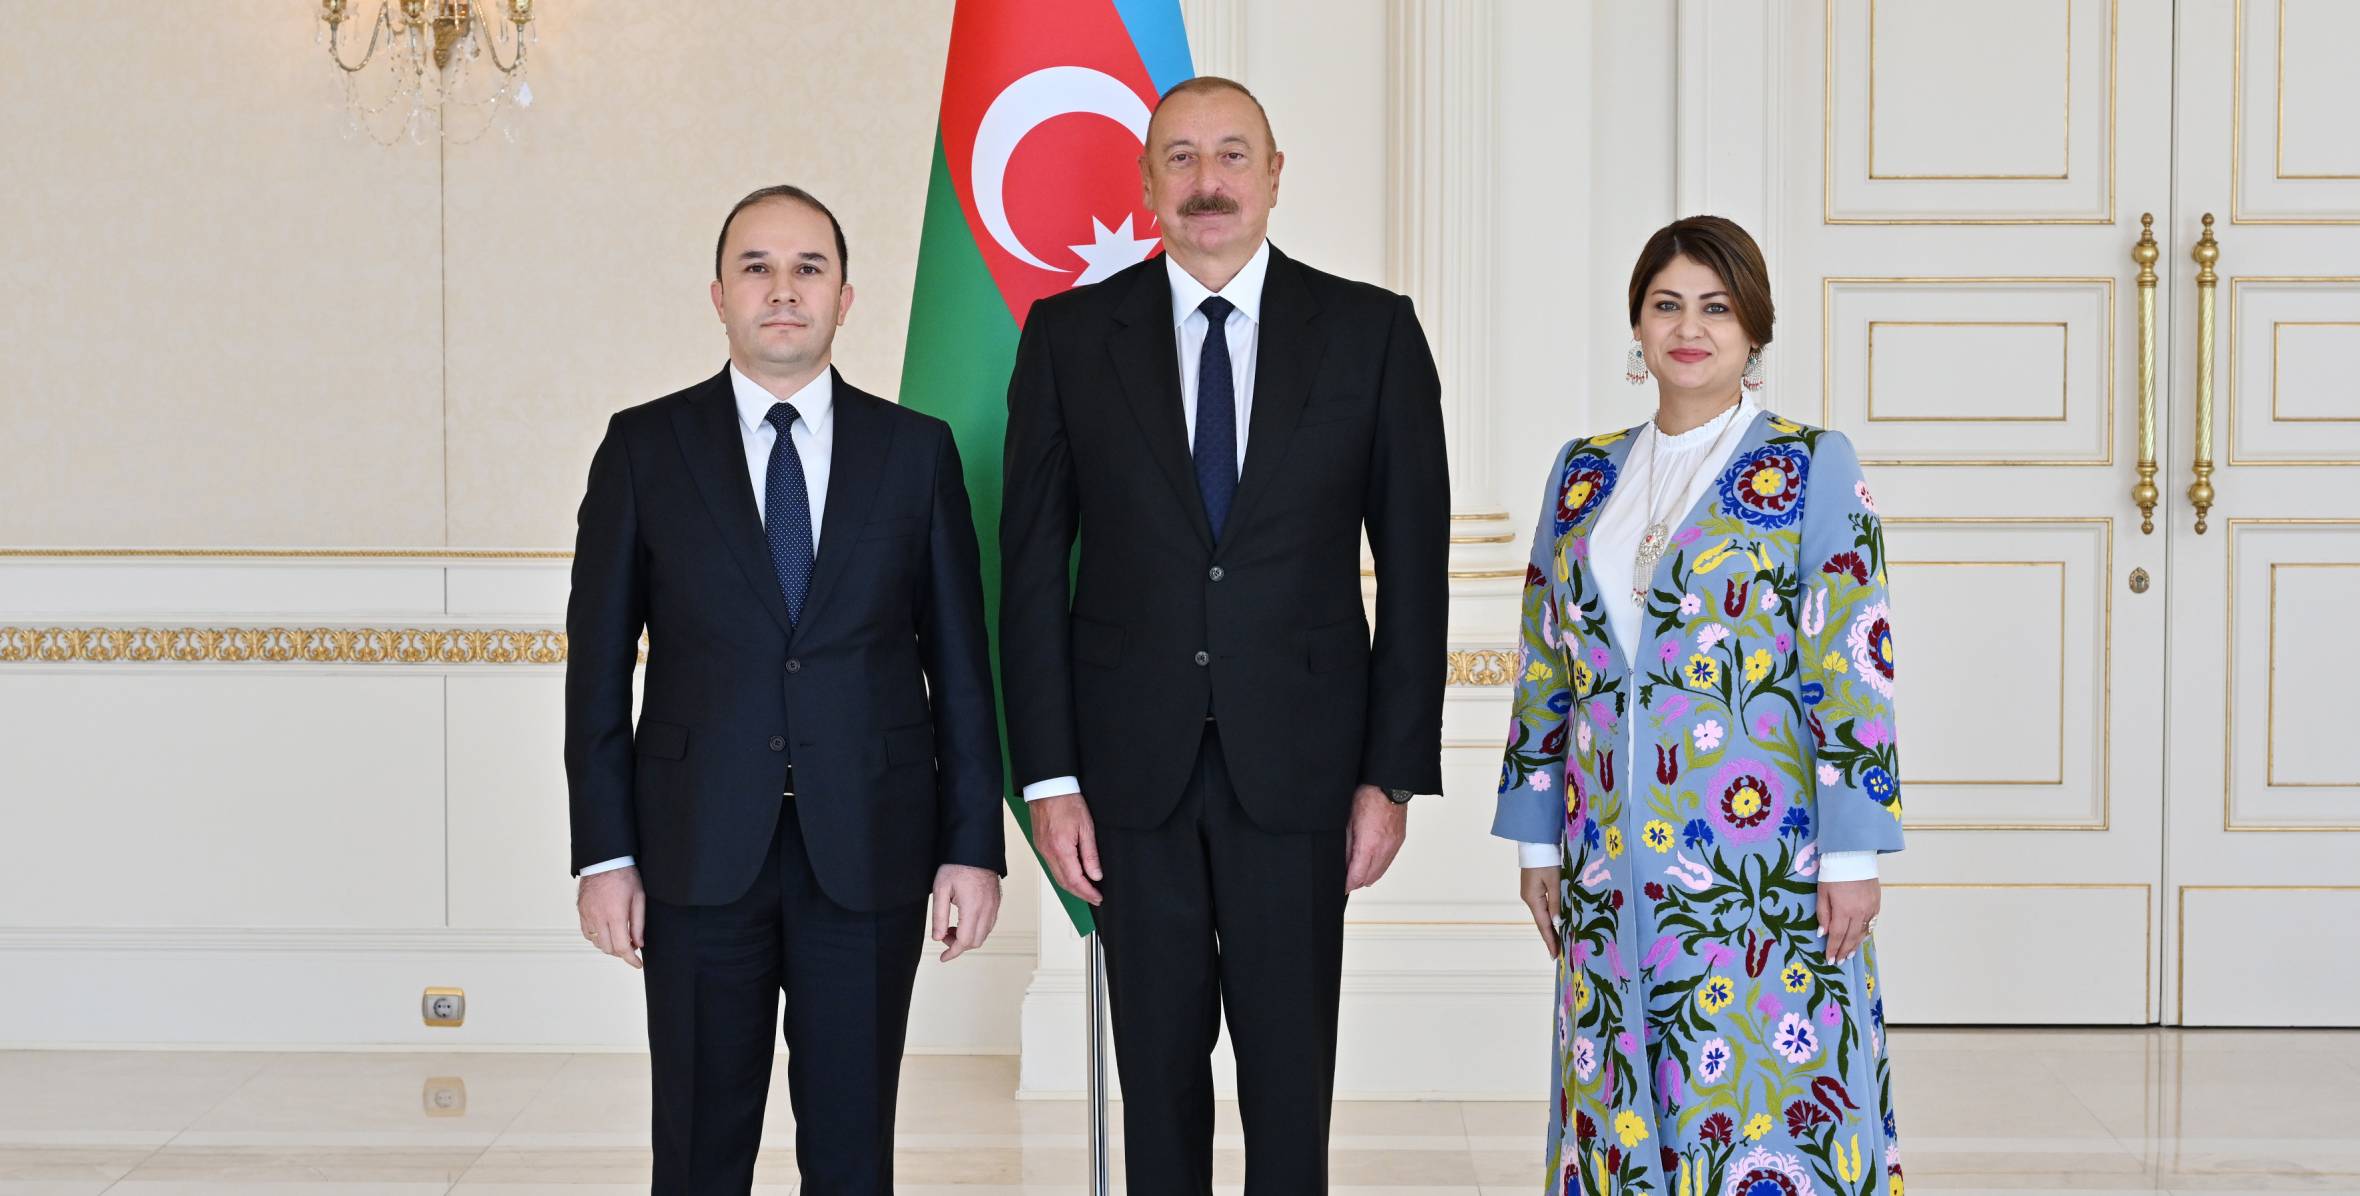 Ильхам Алиев принял верительные грамоты новоназначенного посла Таджикистана в Азербайджане